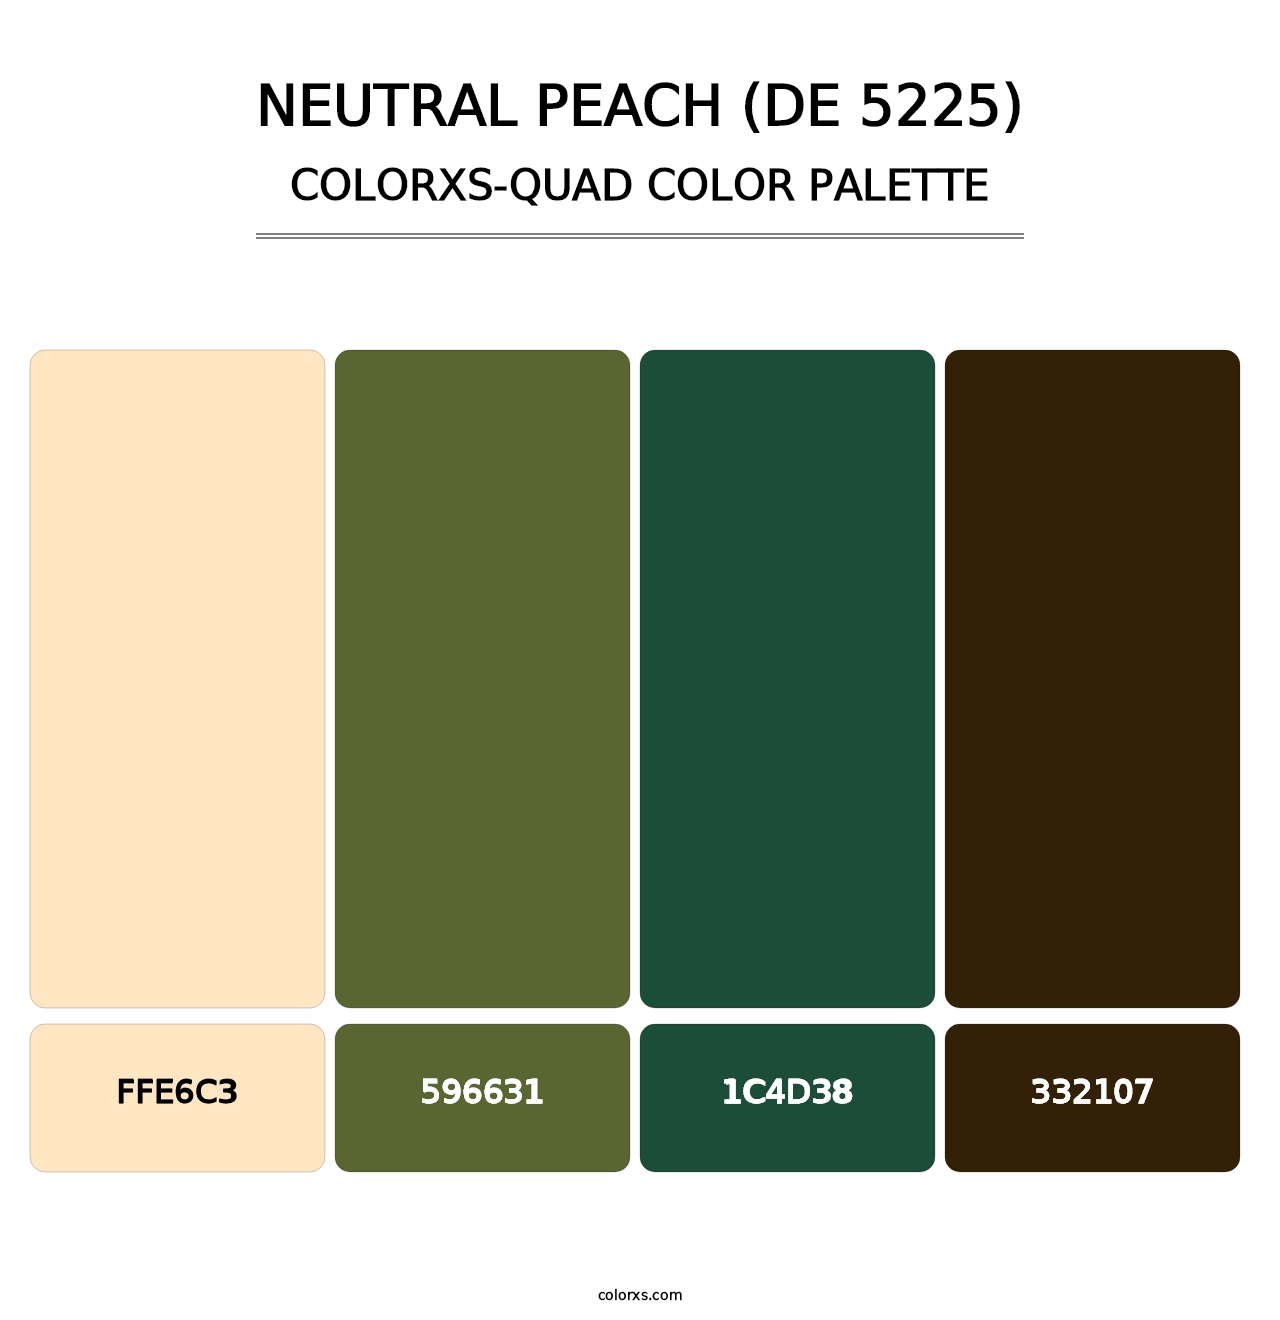 Neutral Peach (DE 5225) - Colorxs Quad Palette